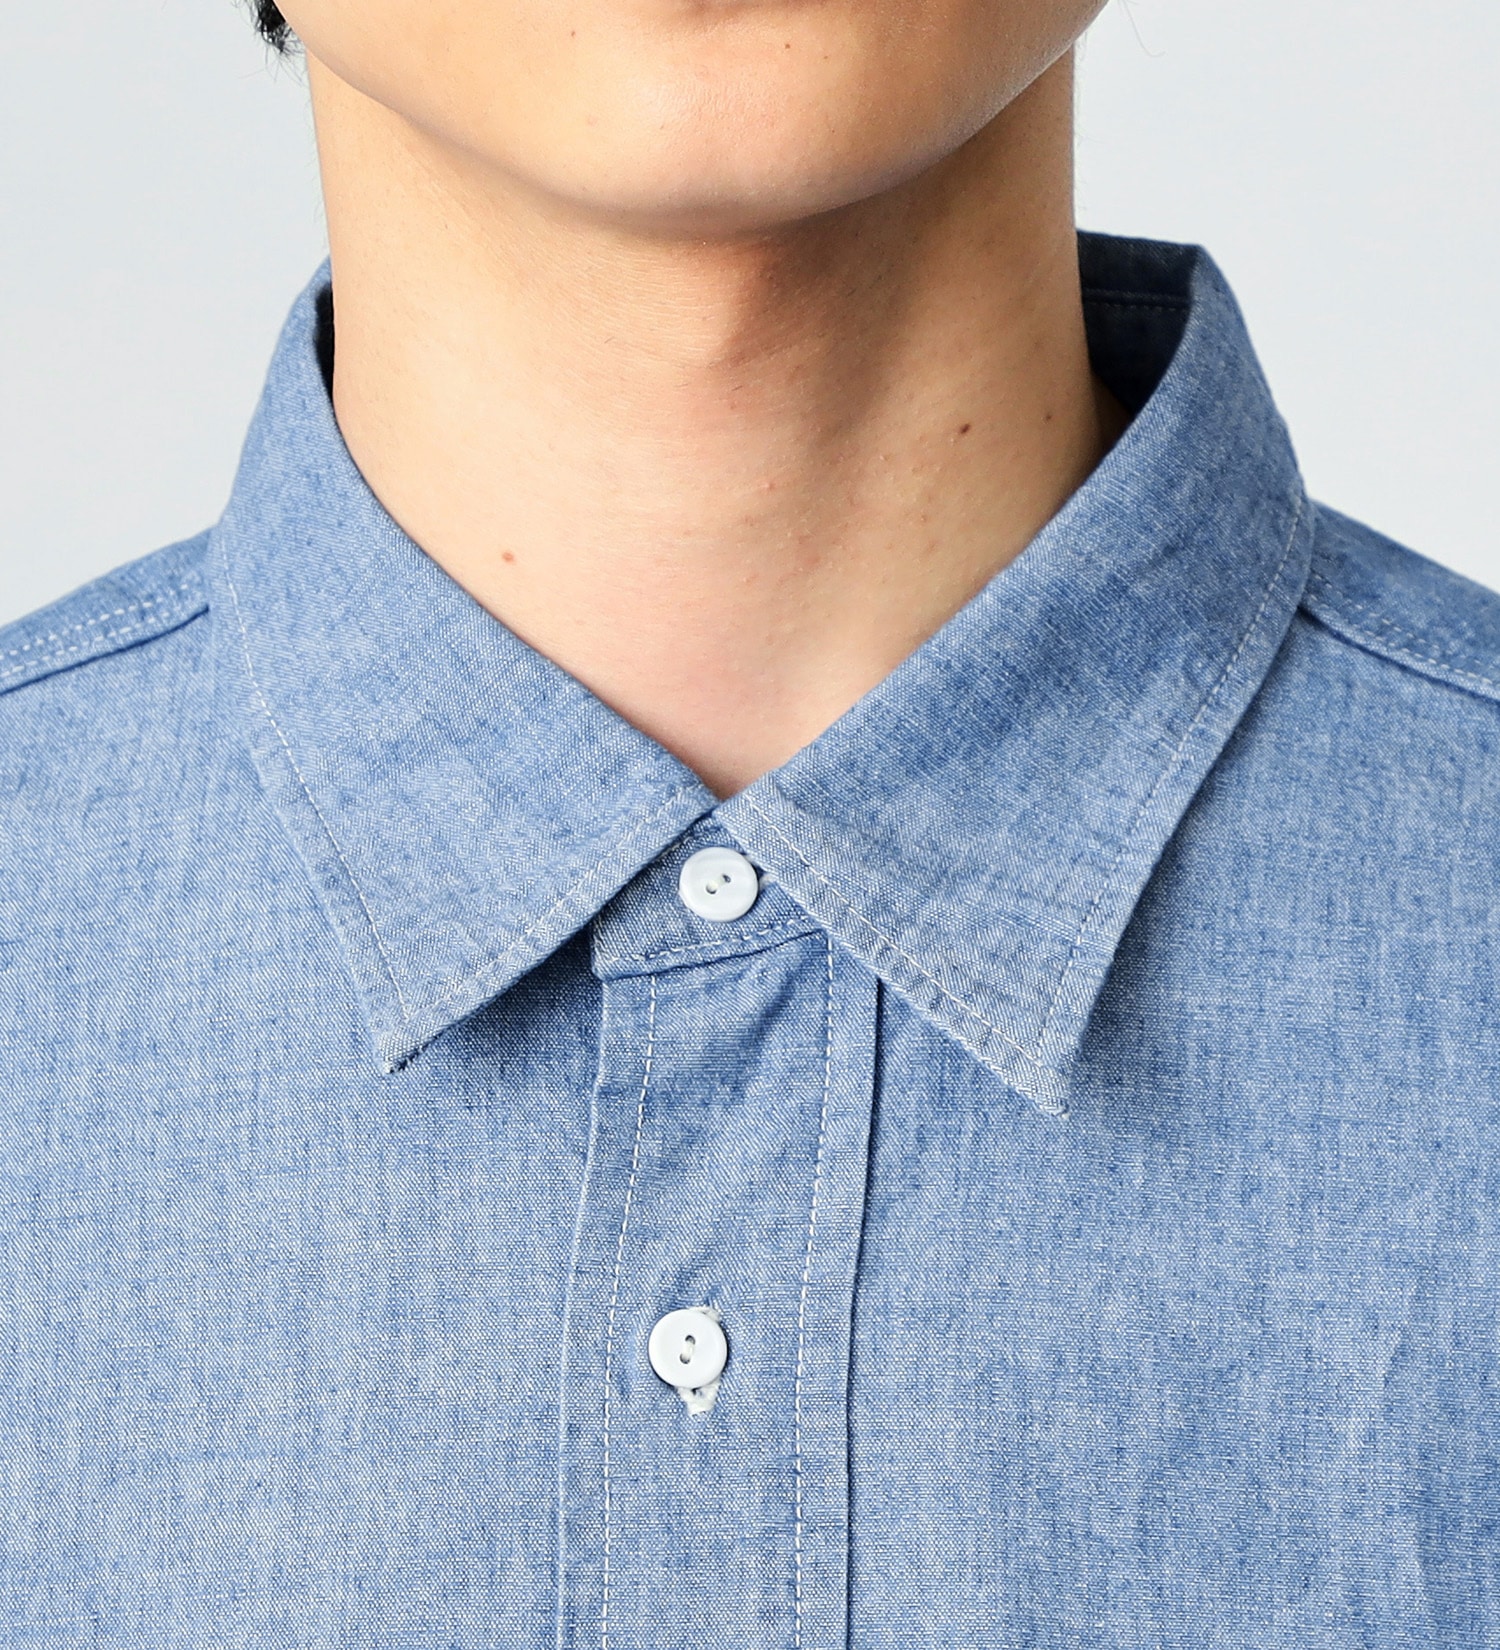 Lee(リー)のワークシャツ|トップス/シャツ/ブラウス/メンズ|濃色ブルー